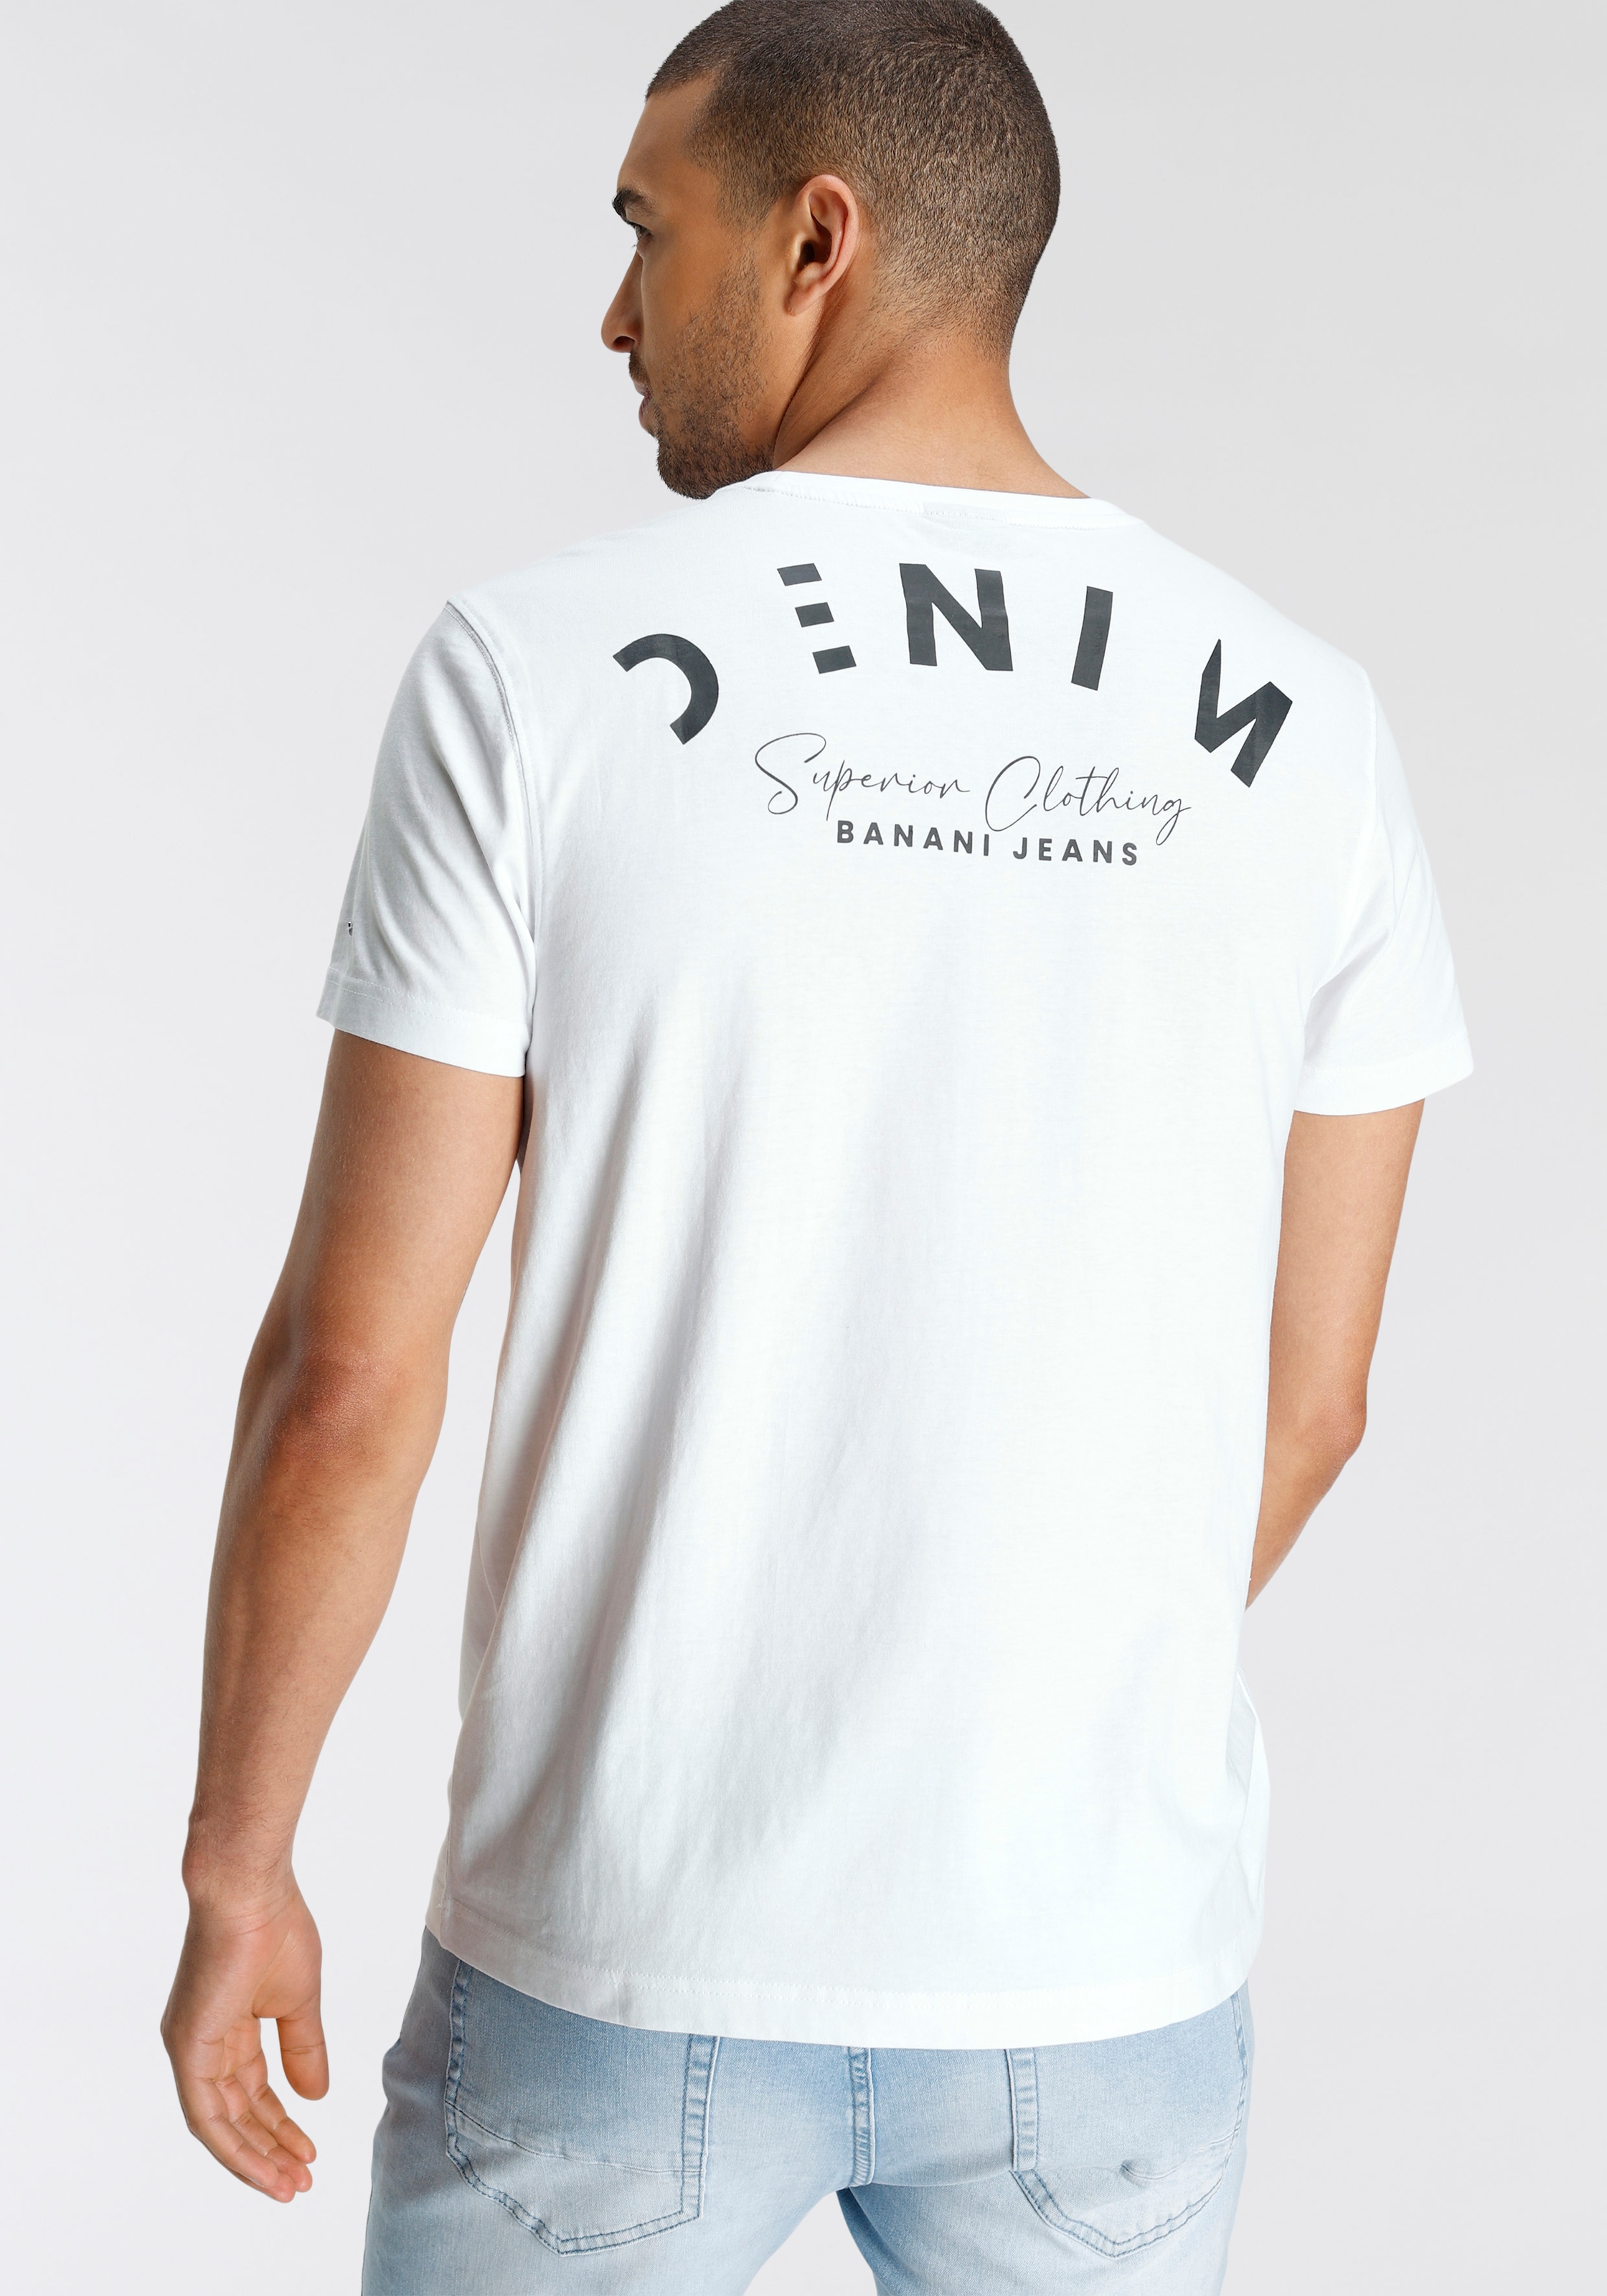 OTTO Bruno coolem mit Rückenprint online kaufen Banani bei T-Shirt,